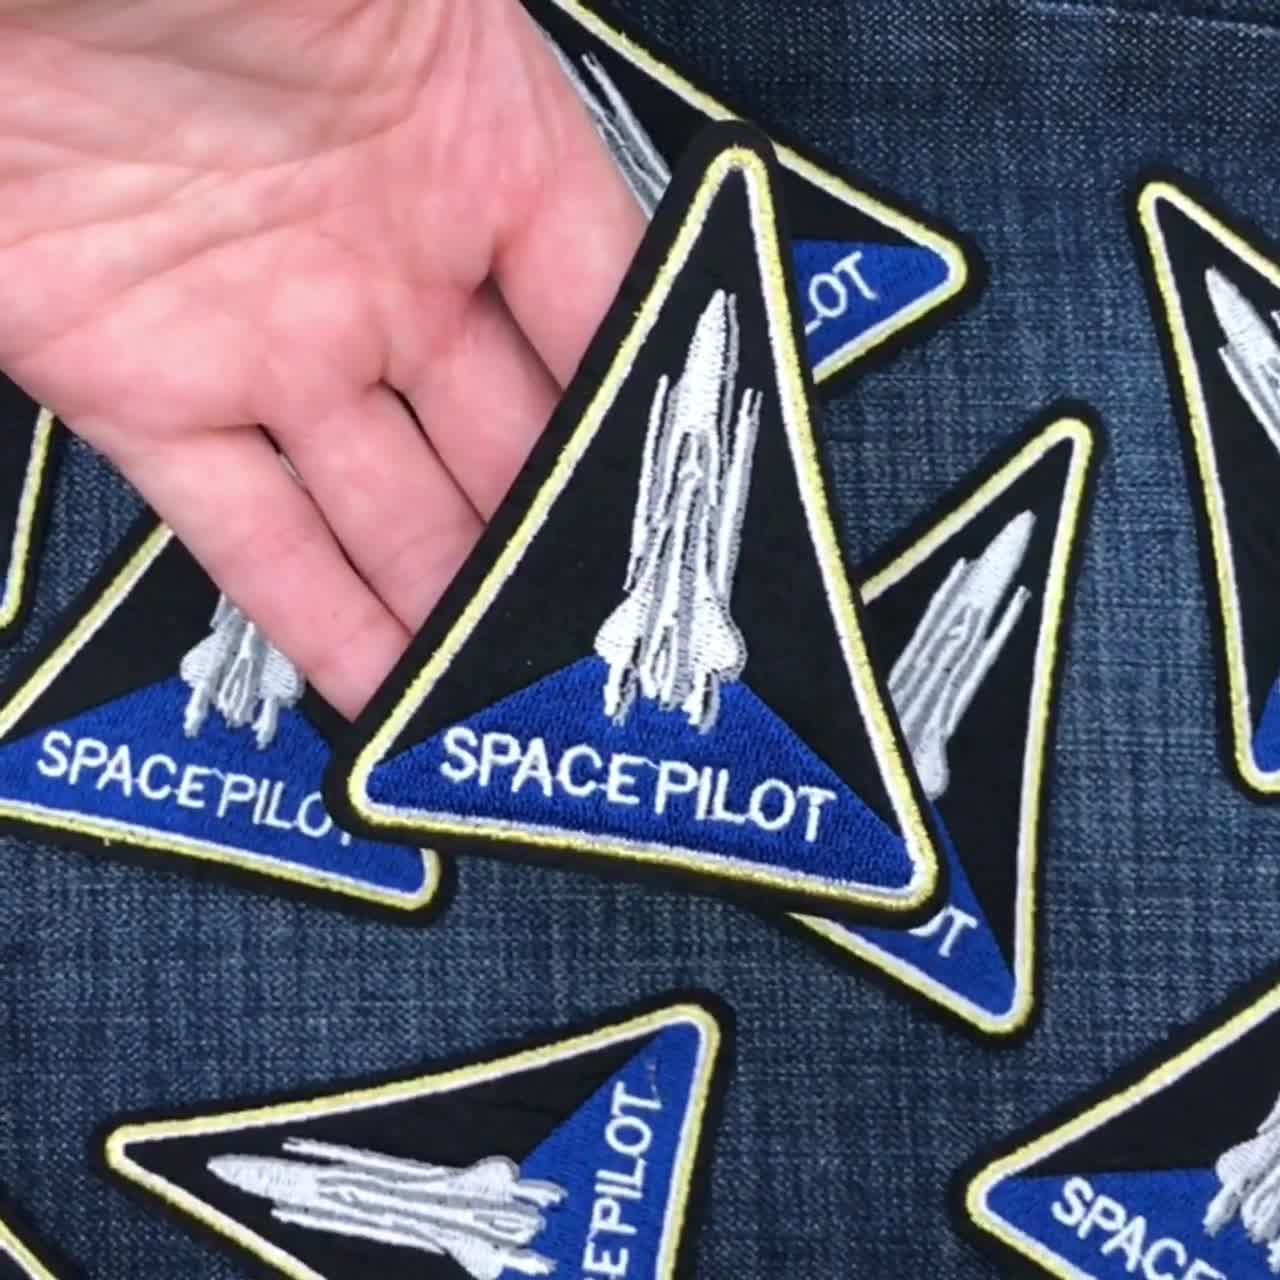  7 parches de la NASA, parches para planchar, insignia espacial  para coser, transbordador espacial y parches de bandera de Estados Unidos  para chaquetas, mochilas, gorras, sombreros, bolsos, ropa : Todo lo